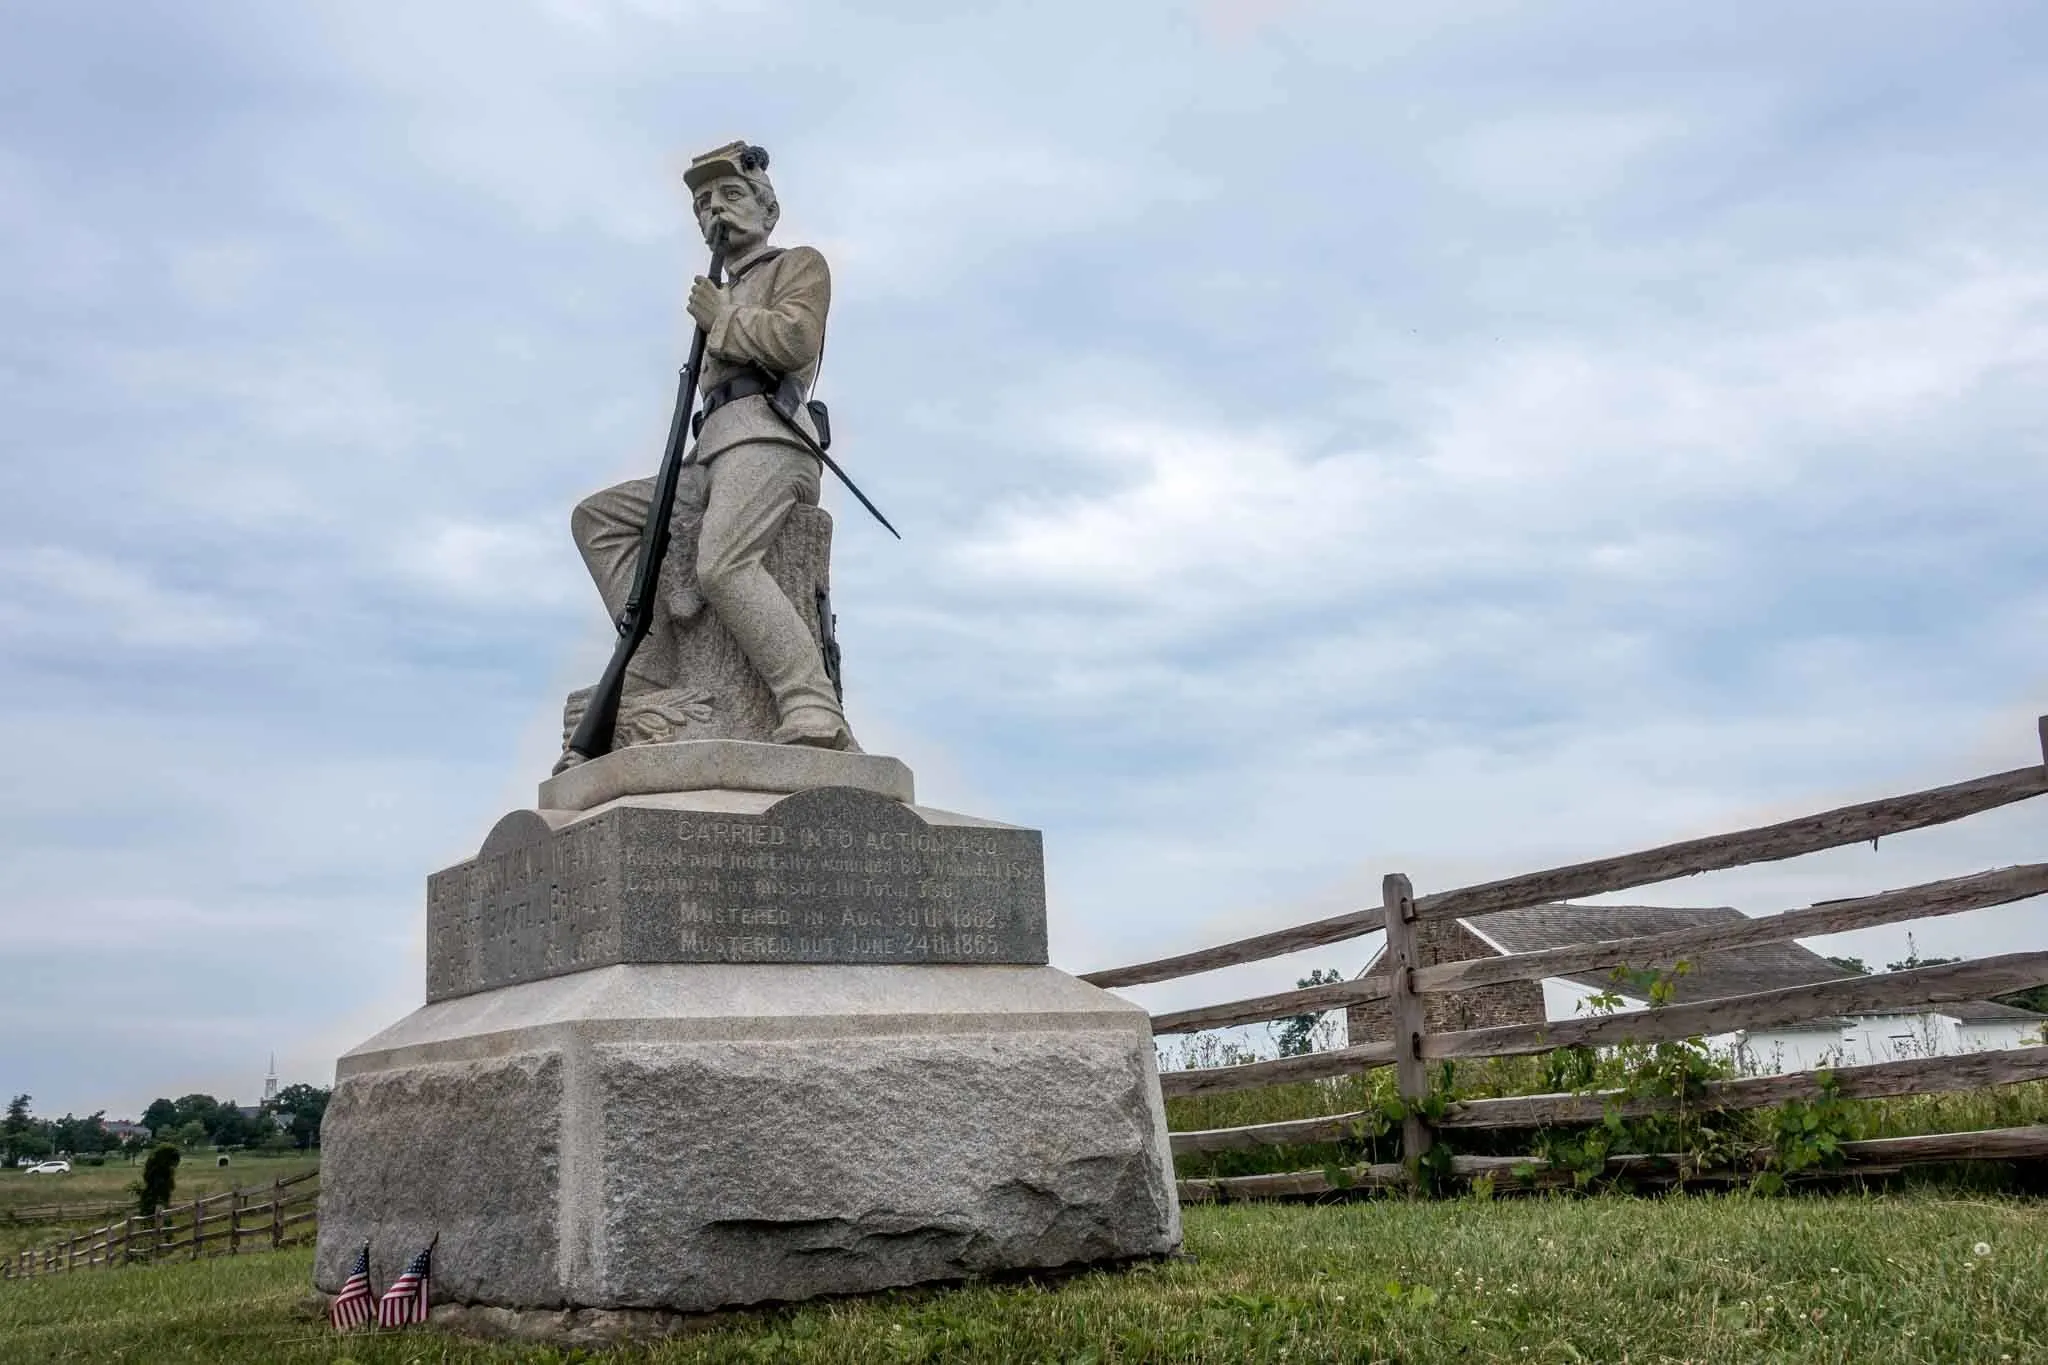 Statue of a Civil War soldier holding a gun